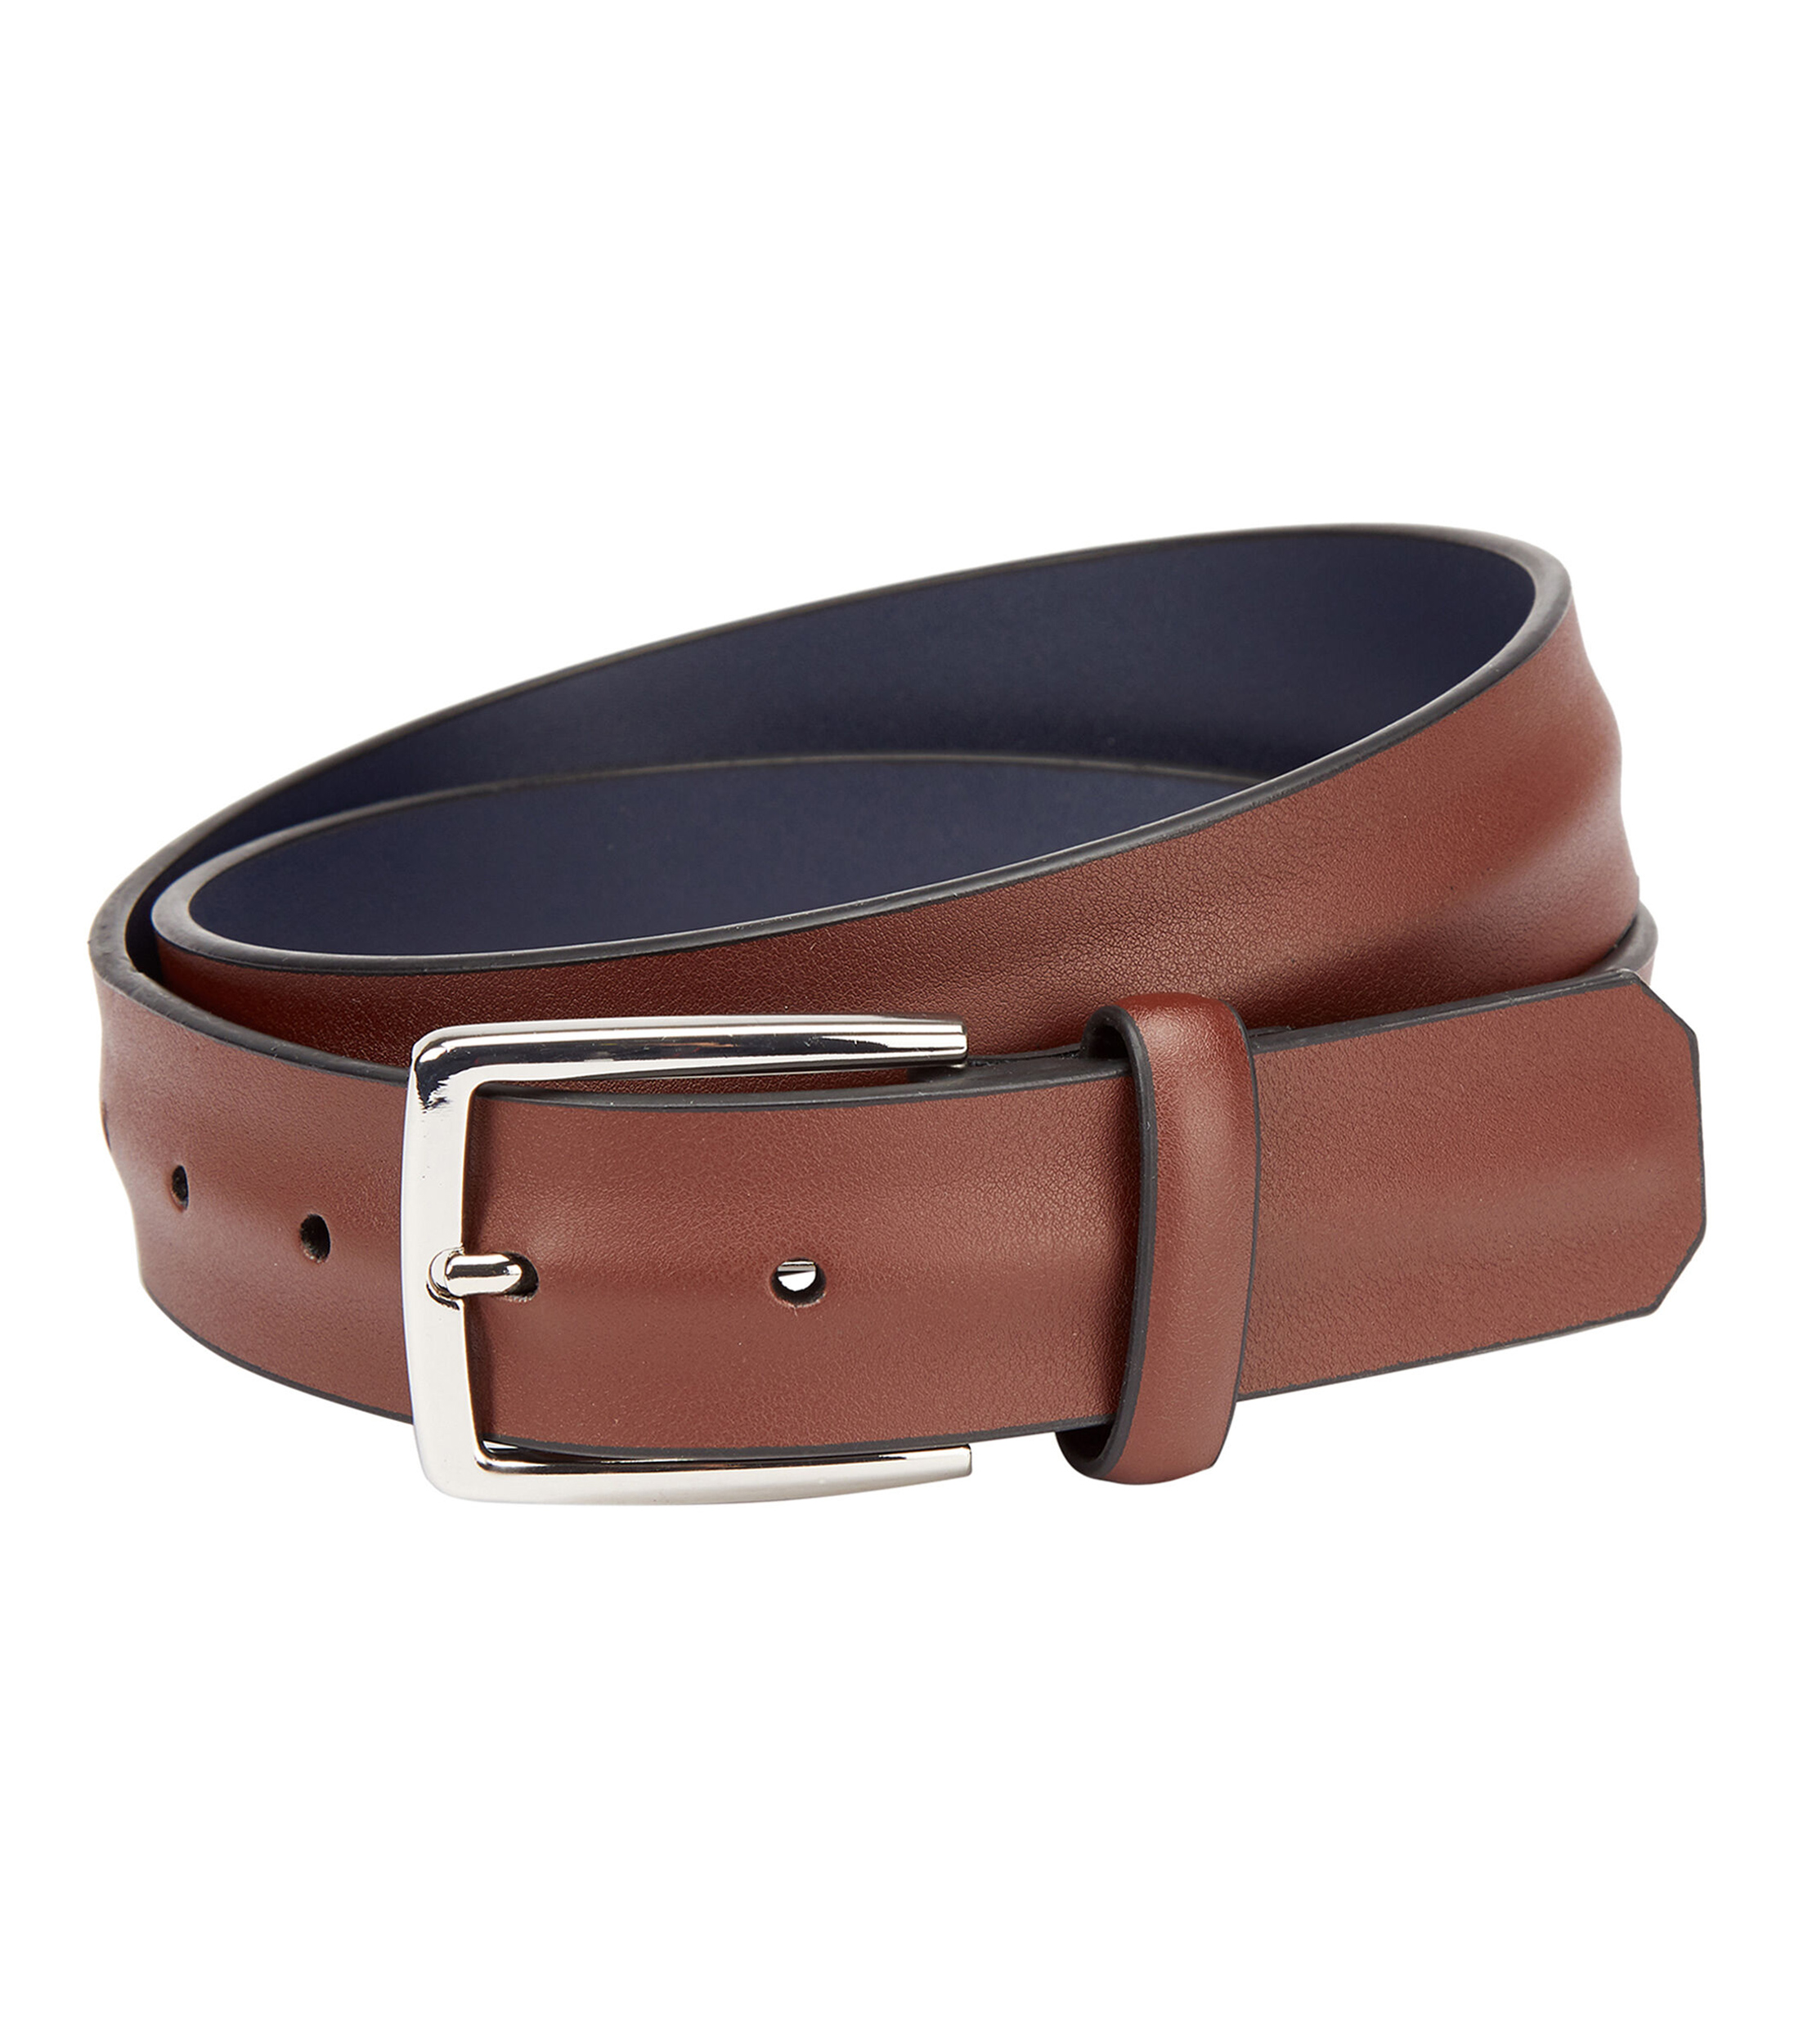 Las mejores ofertas en Cinturones de Cuero Marrón Louis Vuitton